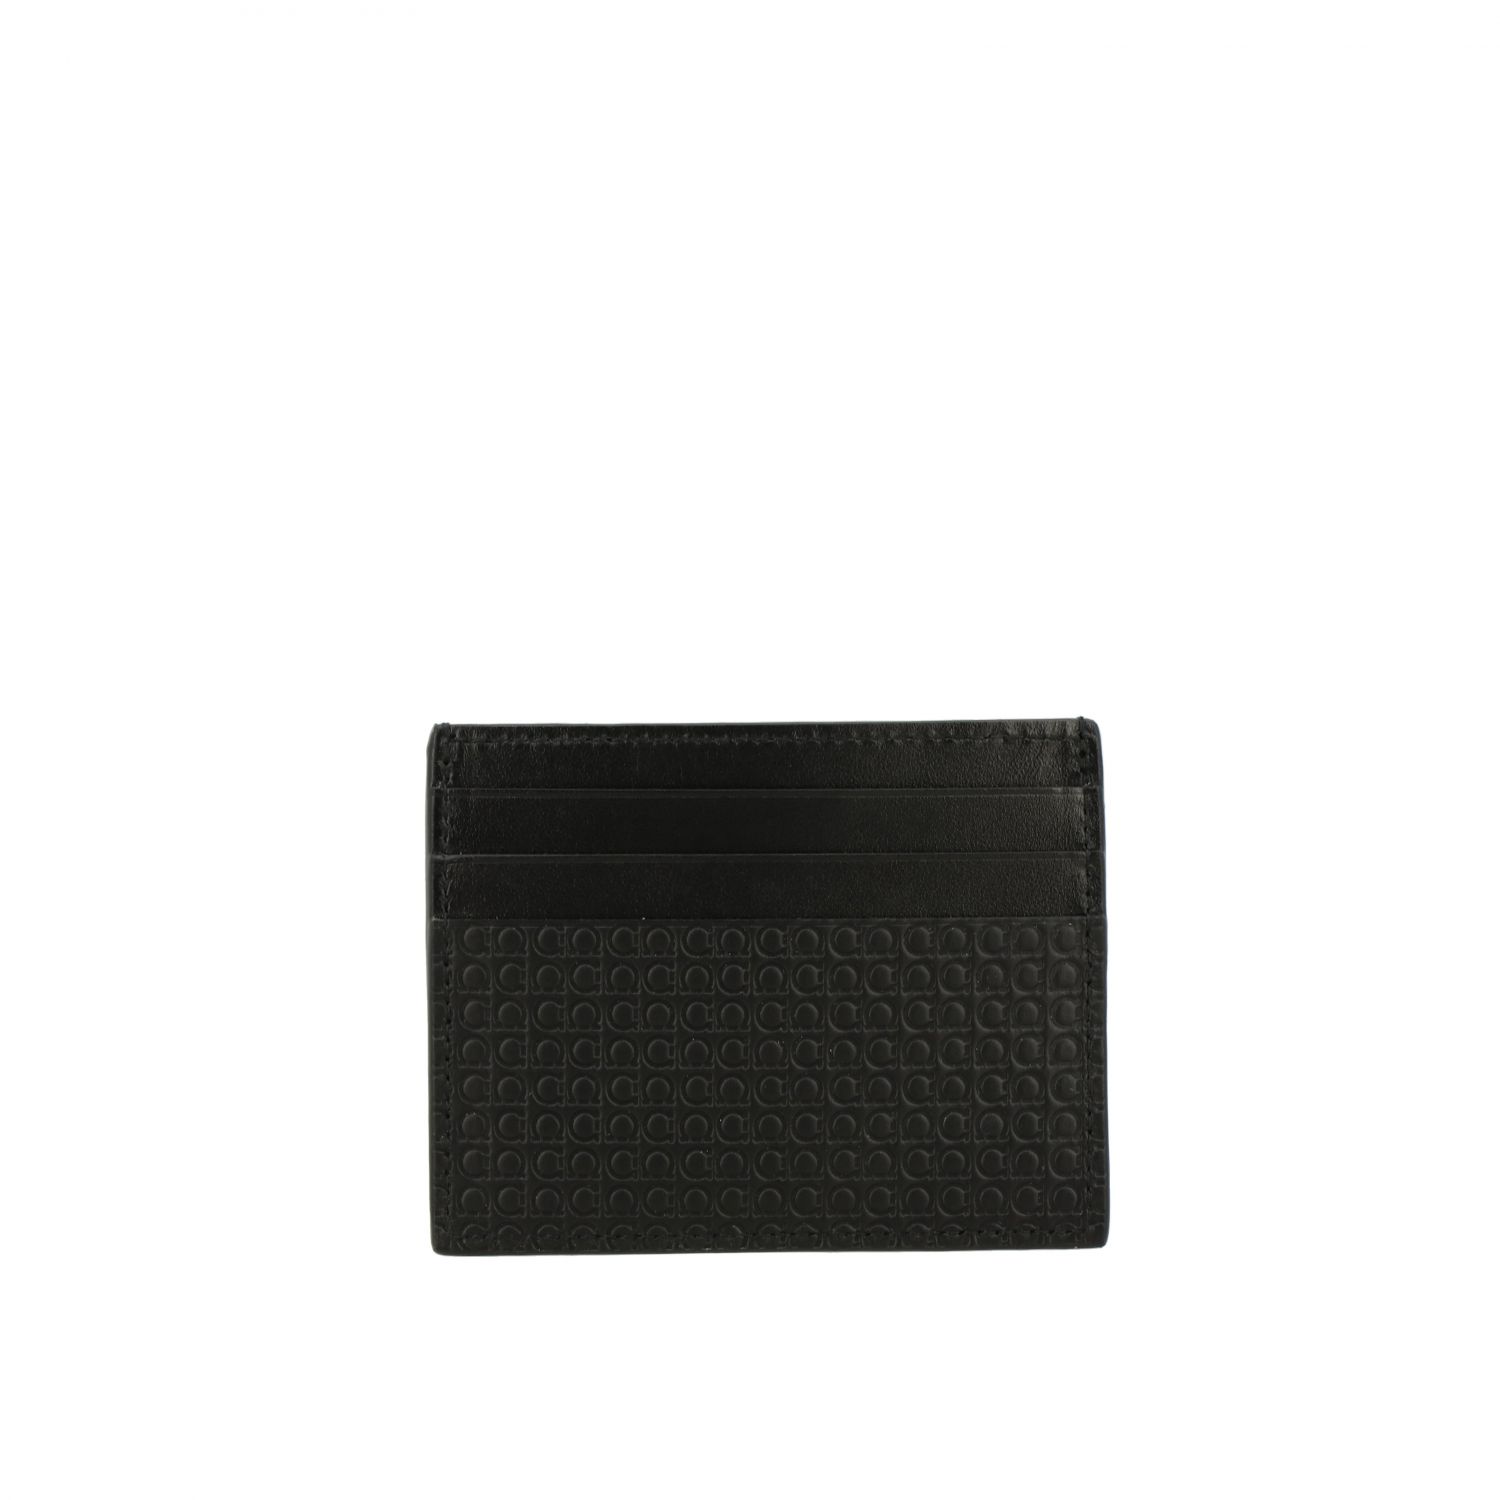 Salvatore Ferragamo Outlet: leather credit card holder - Black ...